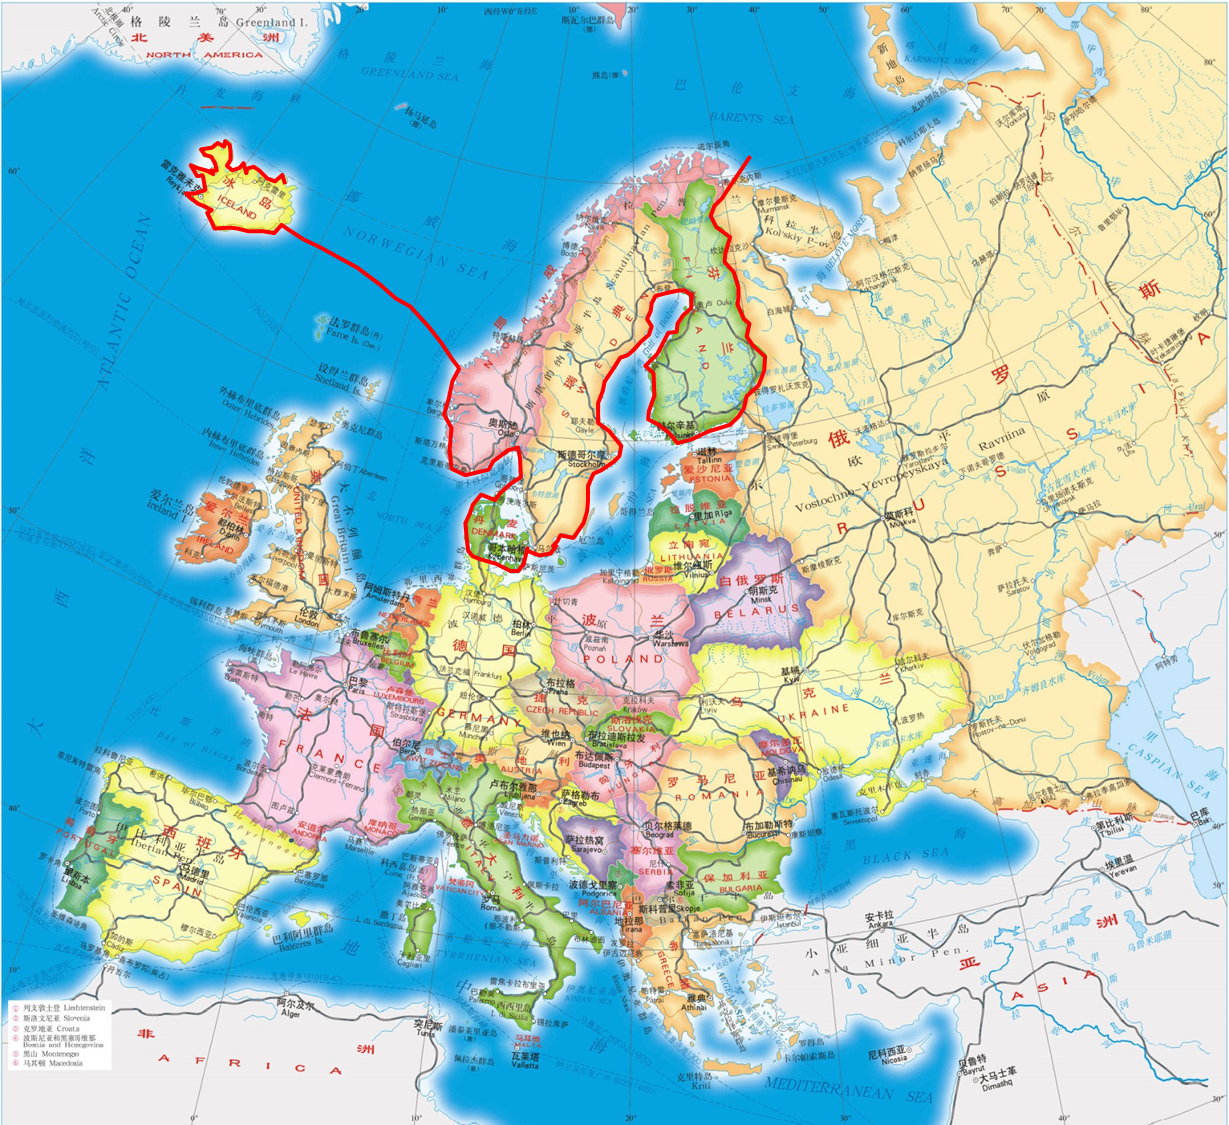 北欧、中欧,南欧,东欧,西欧是怎么个划分?地理